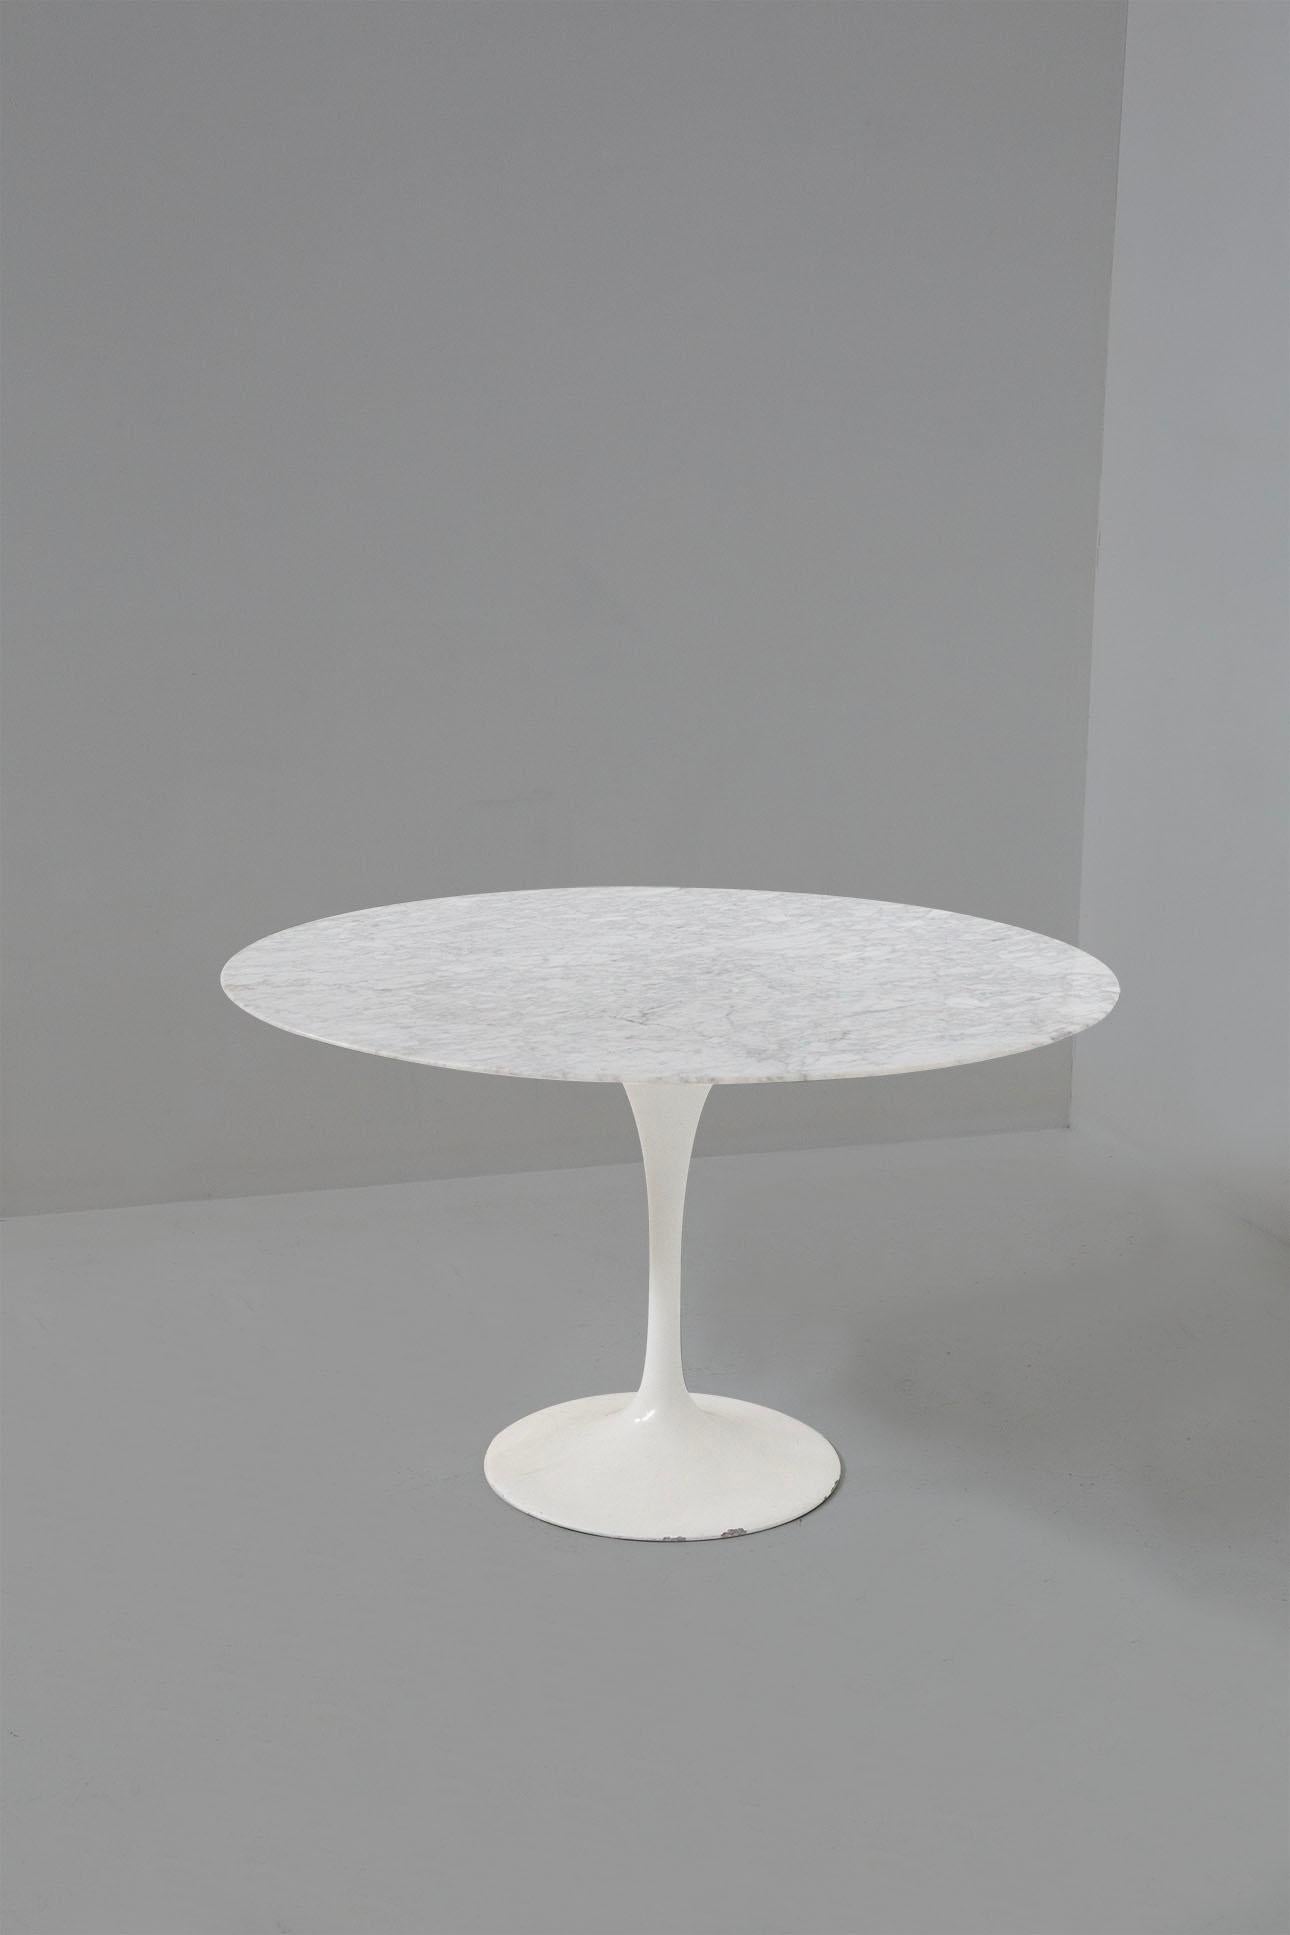 Une élégance intemporelle, un design indémodable, des lignes douces et fluides. Table en marbre et base en aluminium conçue par Eero Saarinen à la fin des années 1970. La table présente un plateau rond en marbre blanc avec des veines noires de